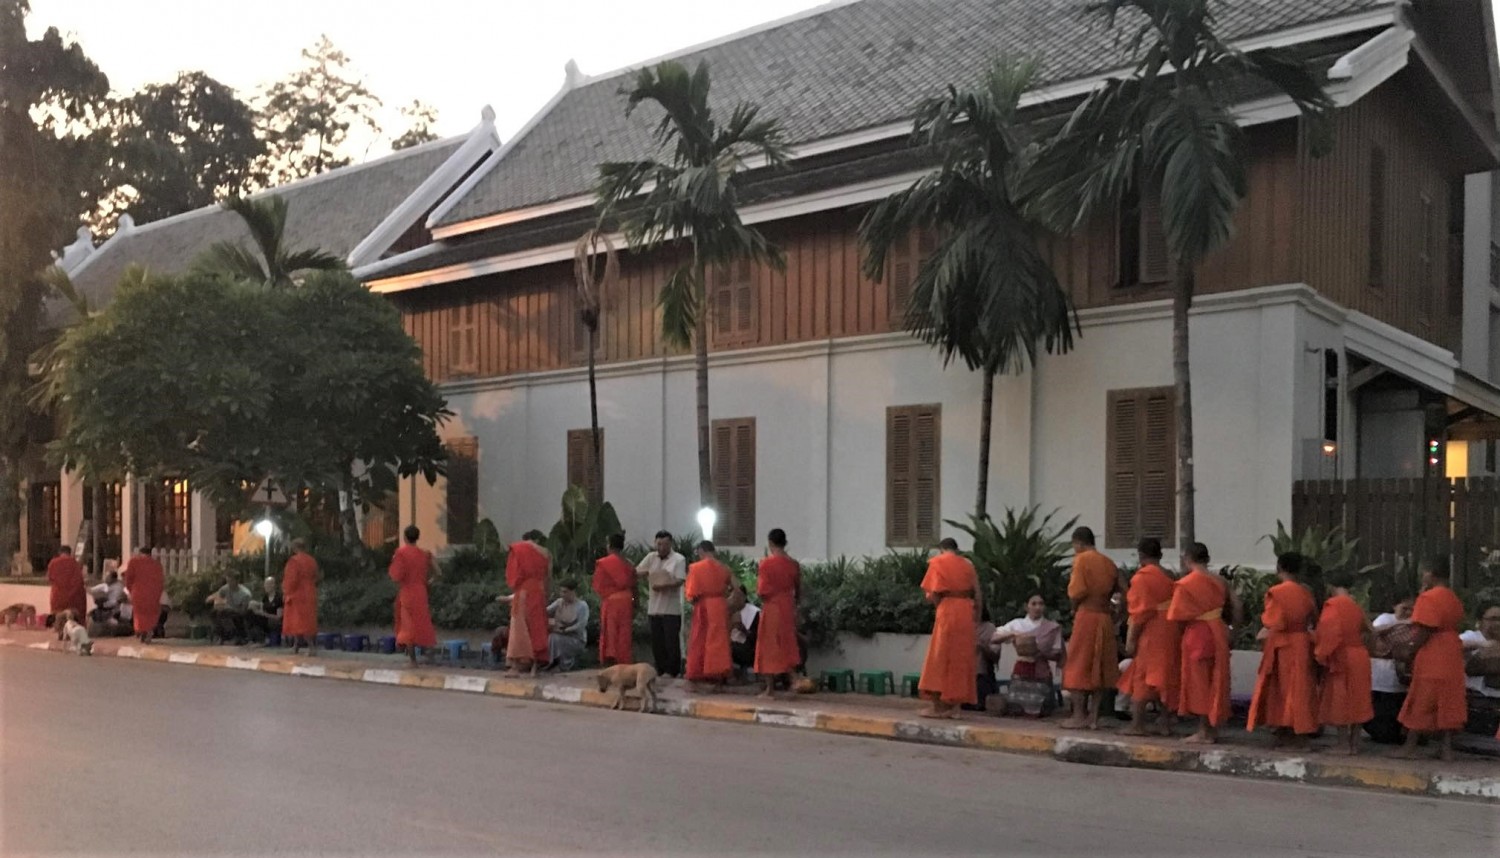 Tham gia buổi sáng hành khất cùng các nhà sư – một hoạt động văn hóa vào buổi sáng sớm ở thành phố Luang Prabang